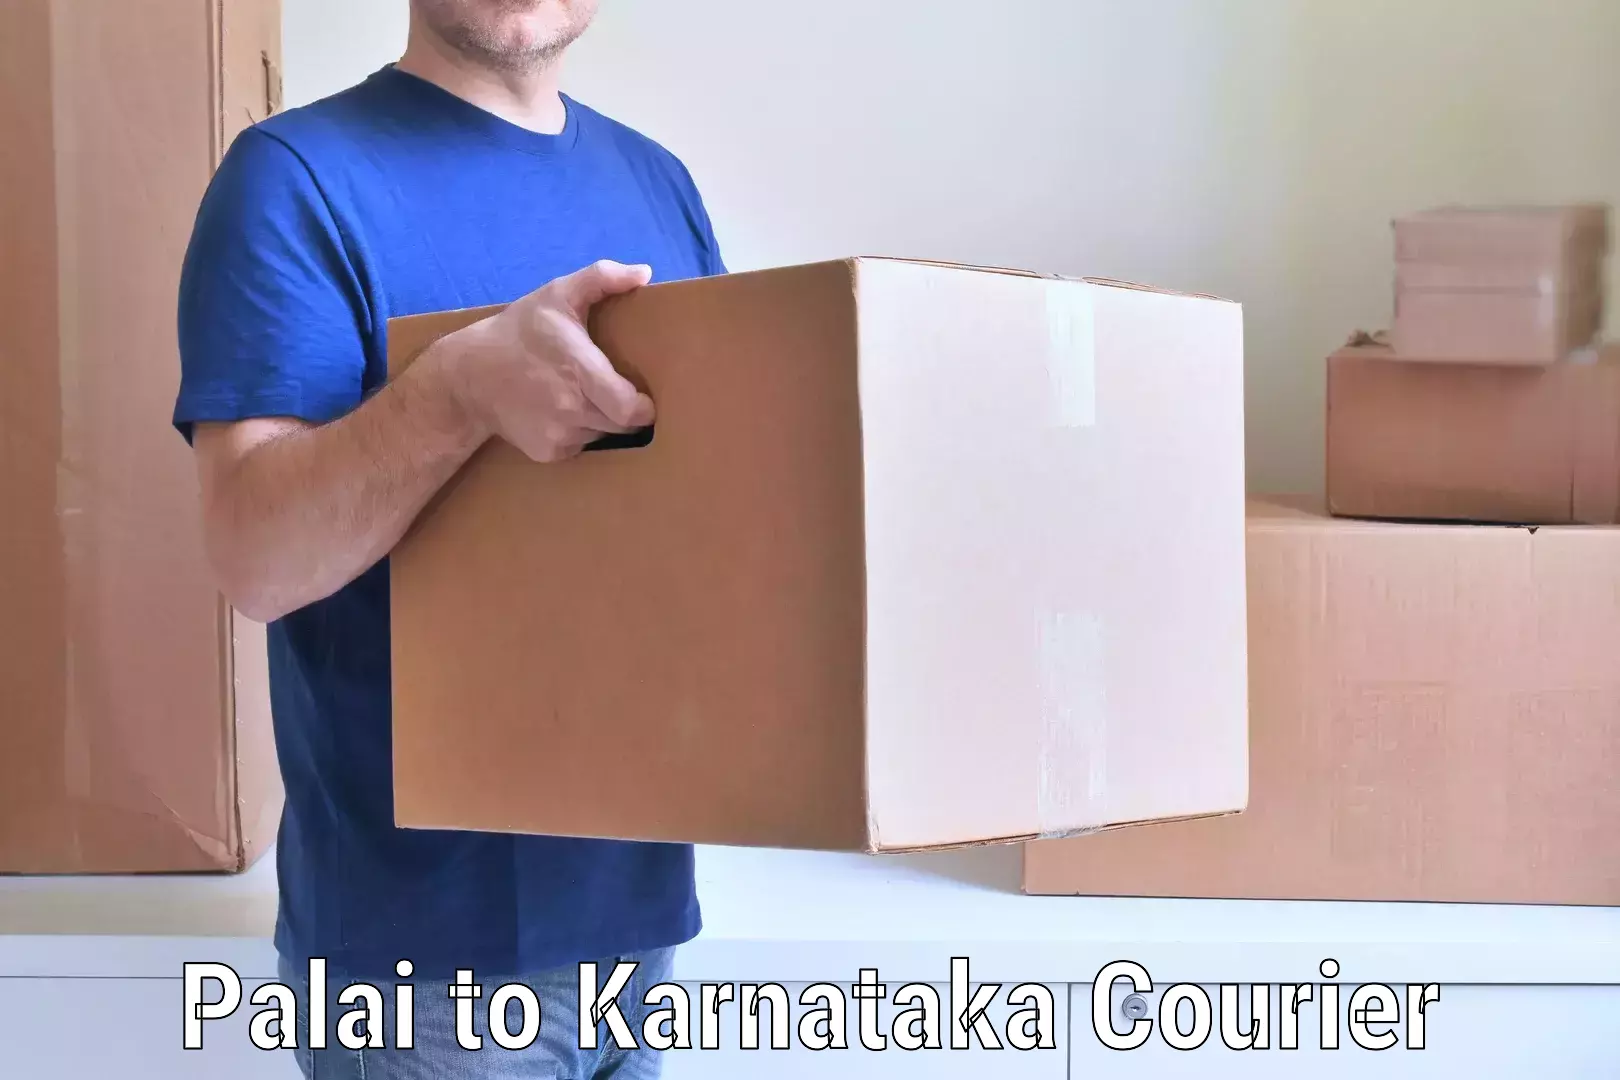 Moving and handling services Palai to Karnataka